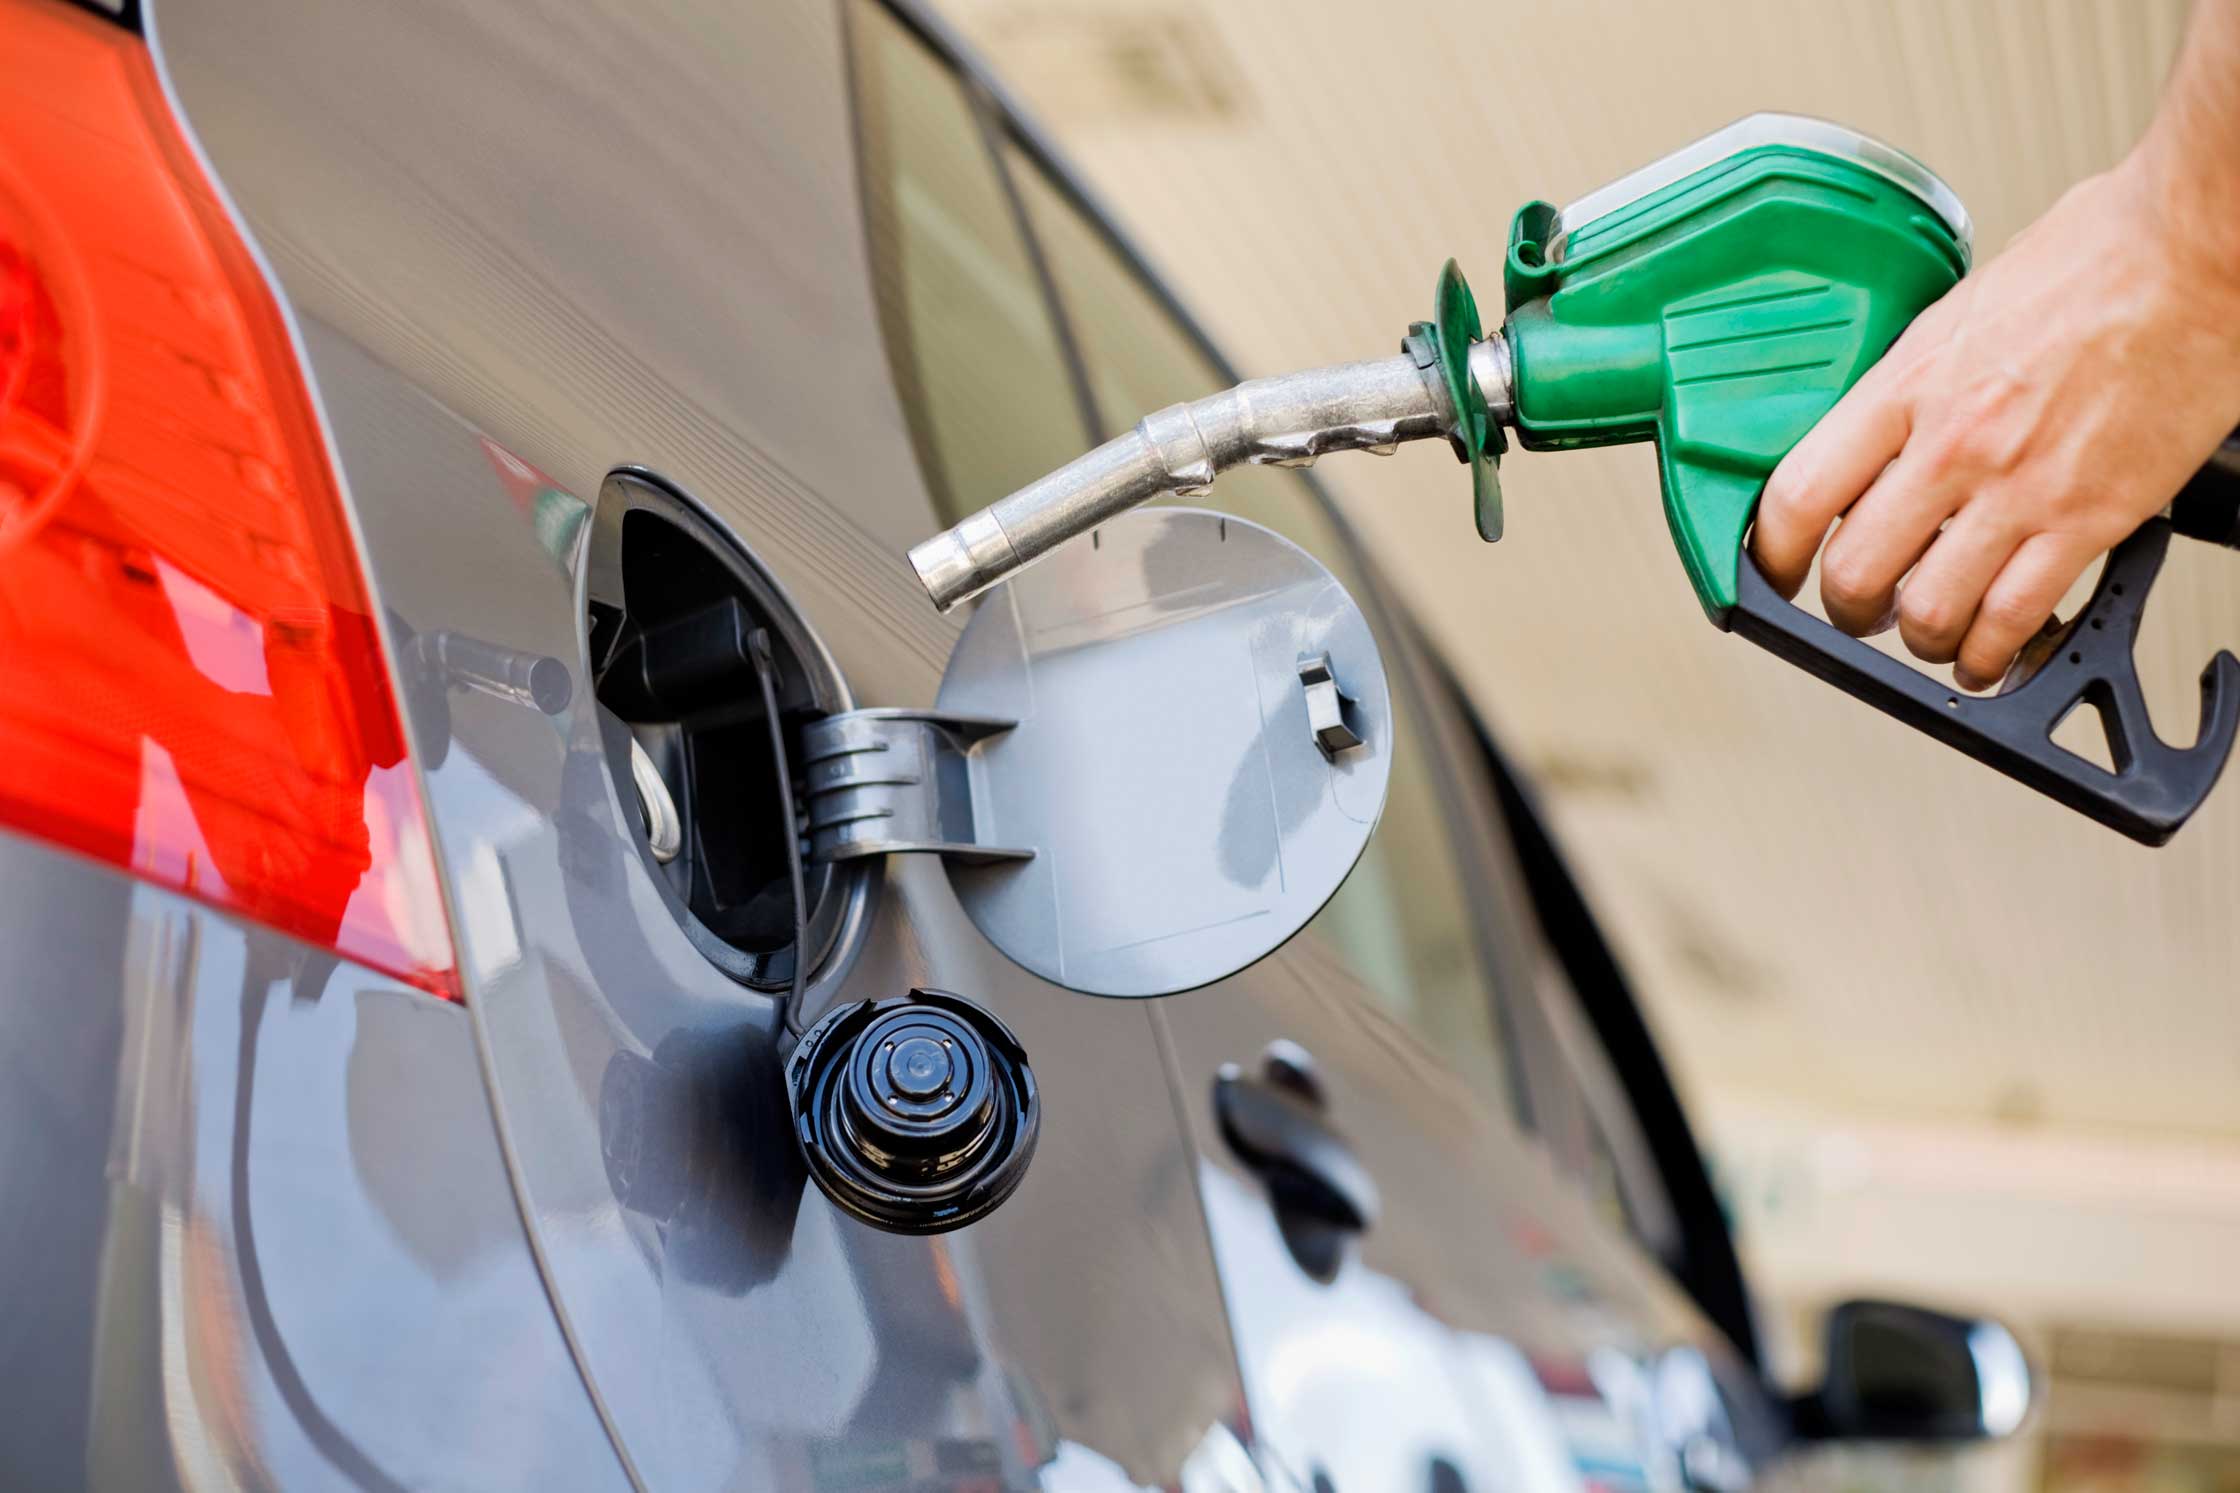 Gasolina subsidiada podría venderse en otras zonas, advierte contralor general